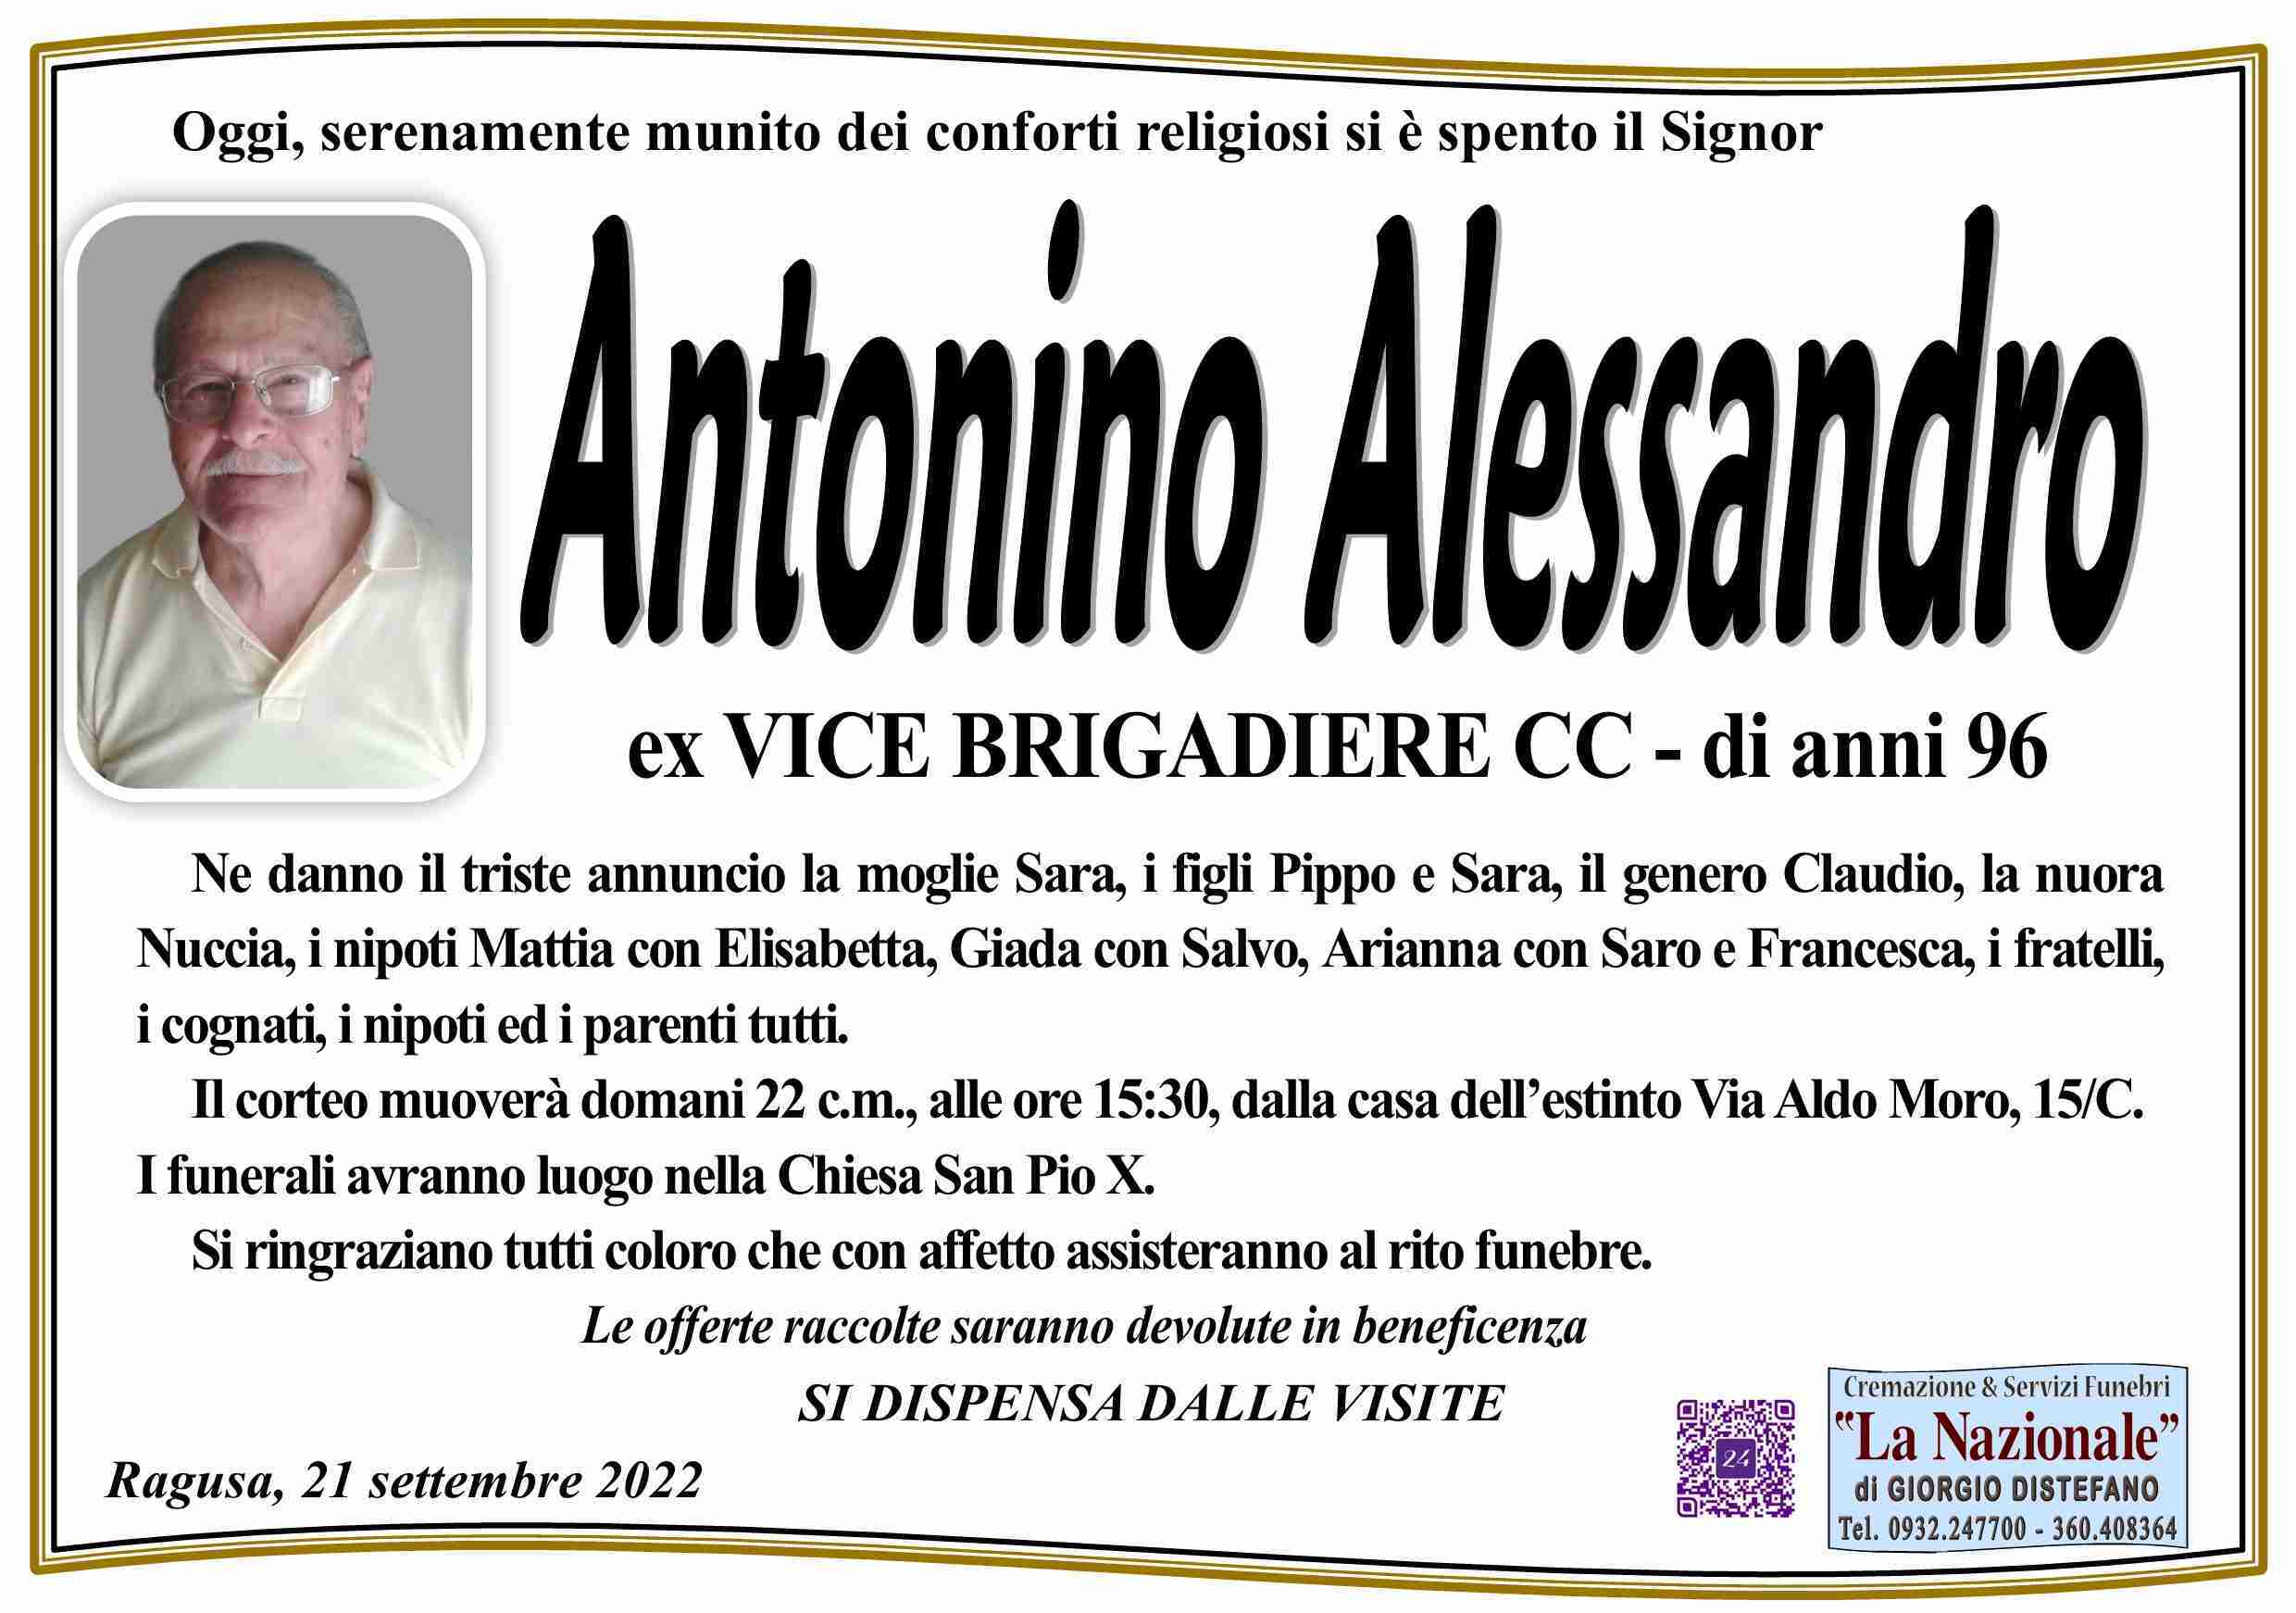 Antonino Alessandro